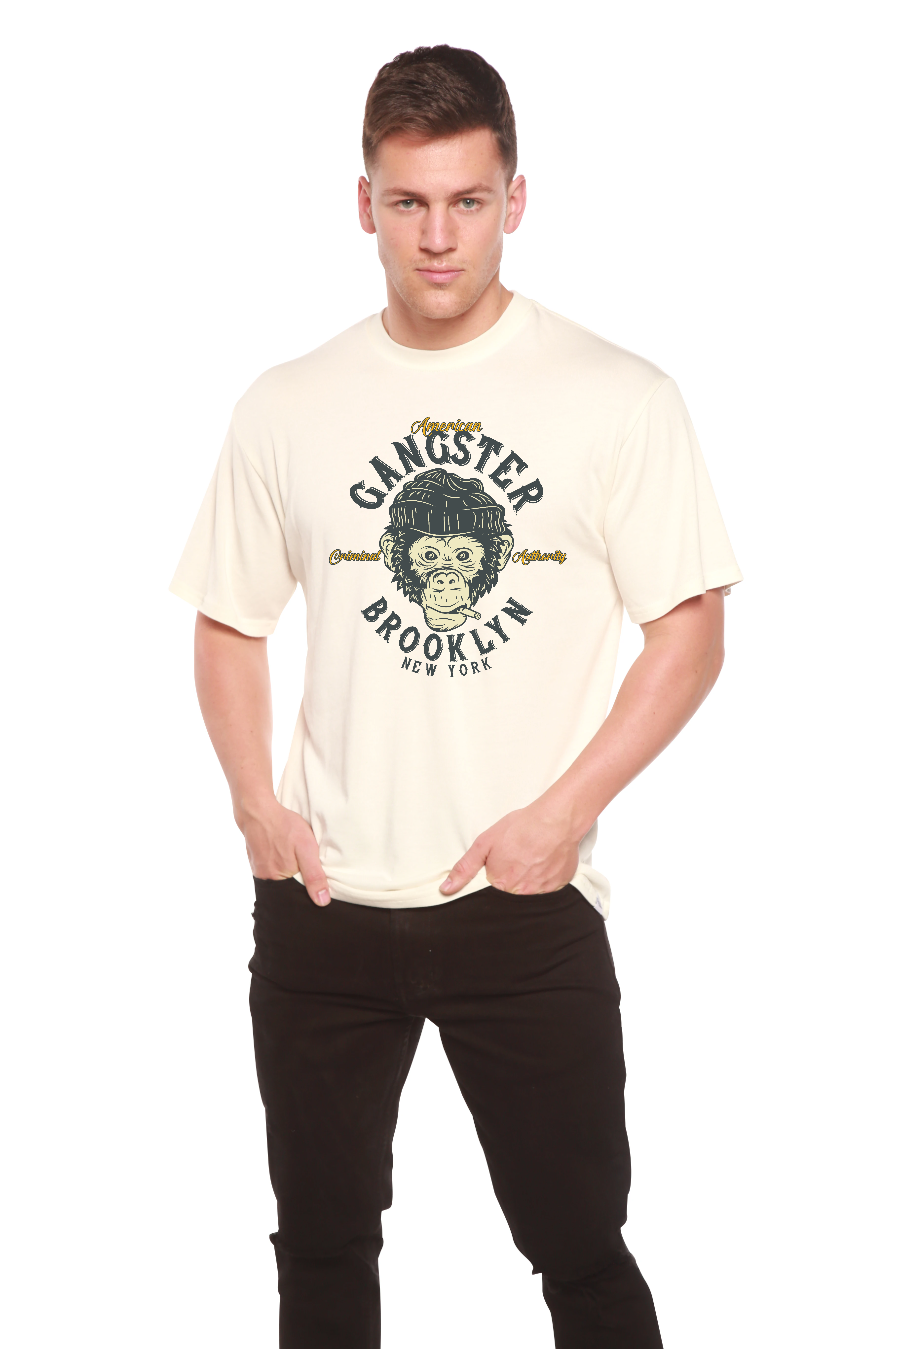 Gangster Brooklyn Men's Bamboo Viscose/Organic Cotton Short Sleeve T-Shirt - Spun Bamboo